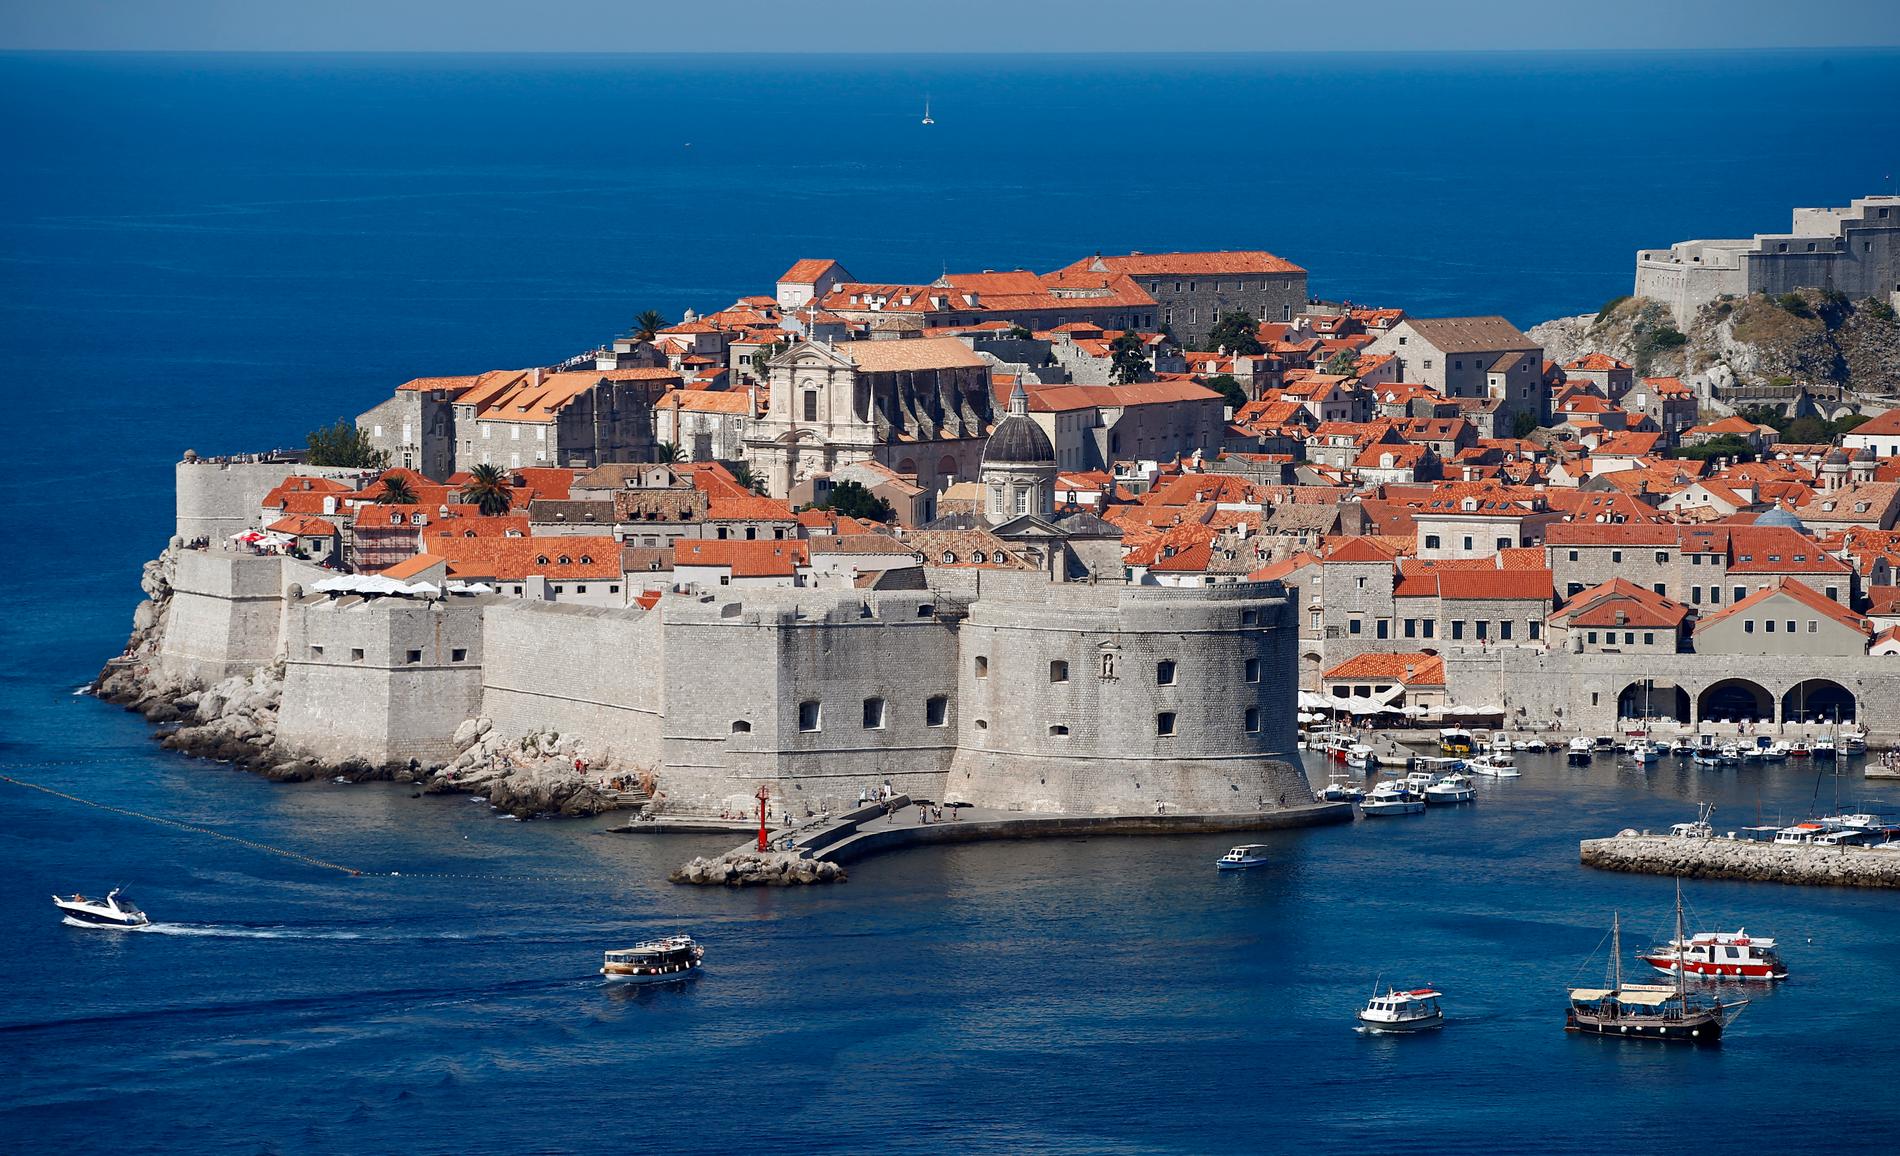 Dubrovnik, Kroatia. Regnet som en av de vakreste og best bevarte byene i middelhavsområdet, og står på UNESCOs verdensarvliste. 